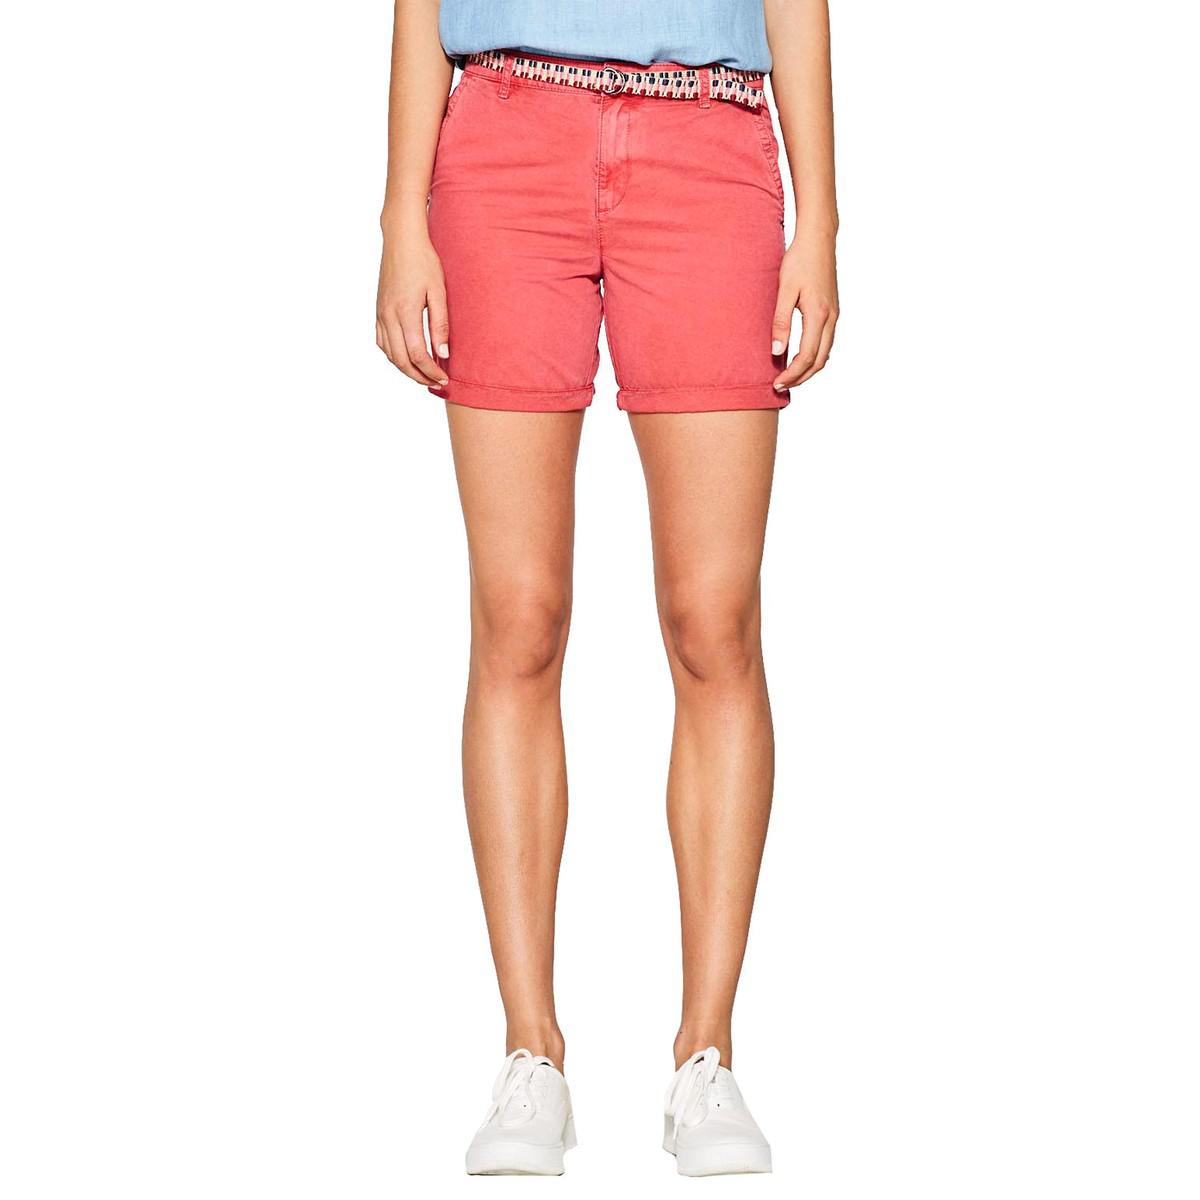 Lyst - Esprit Cotton Shorts in Pink